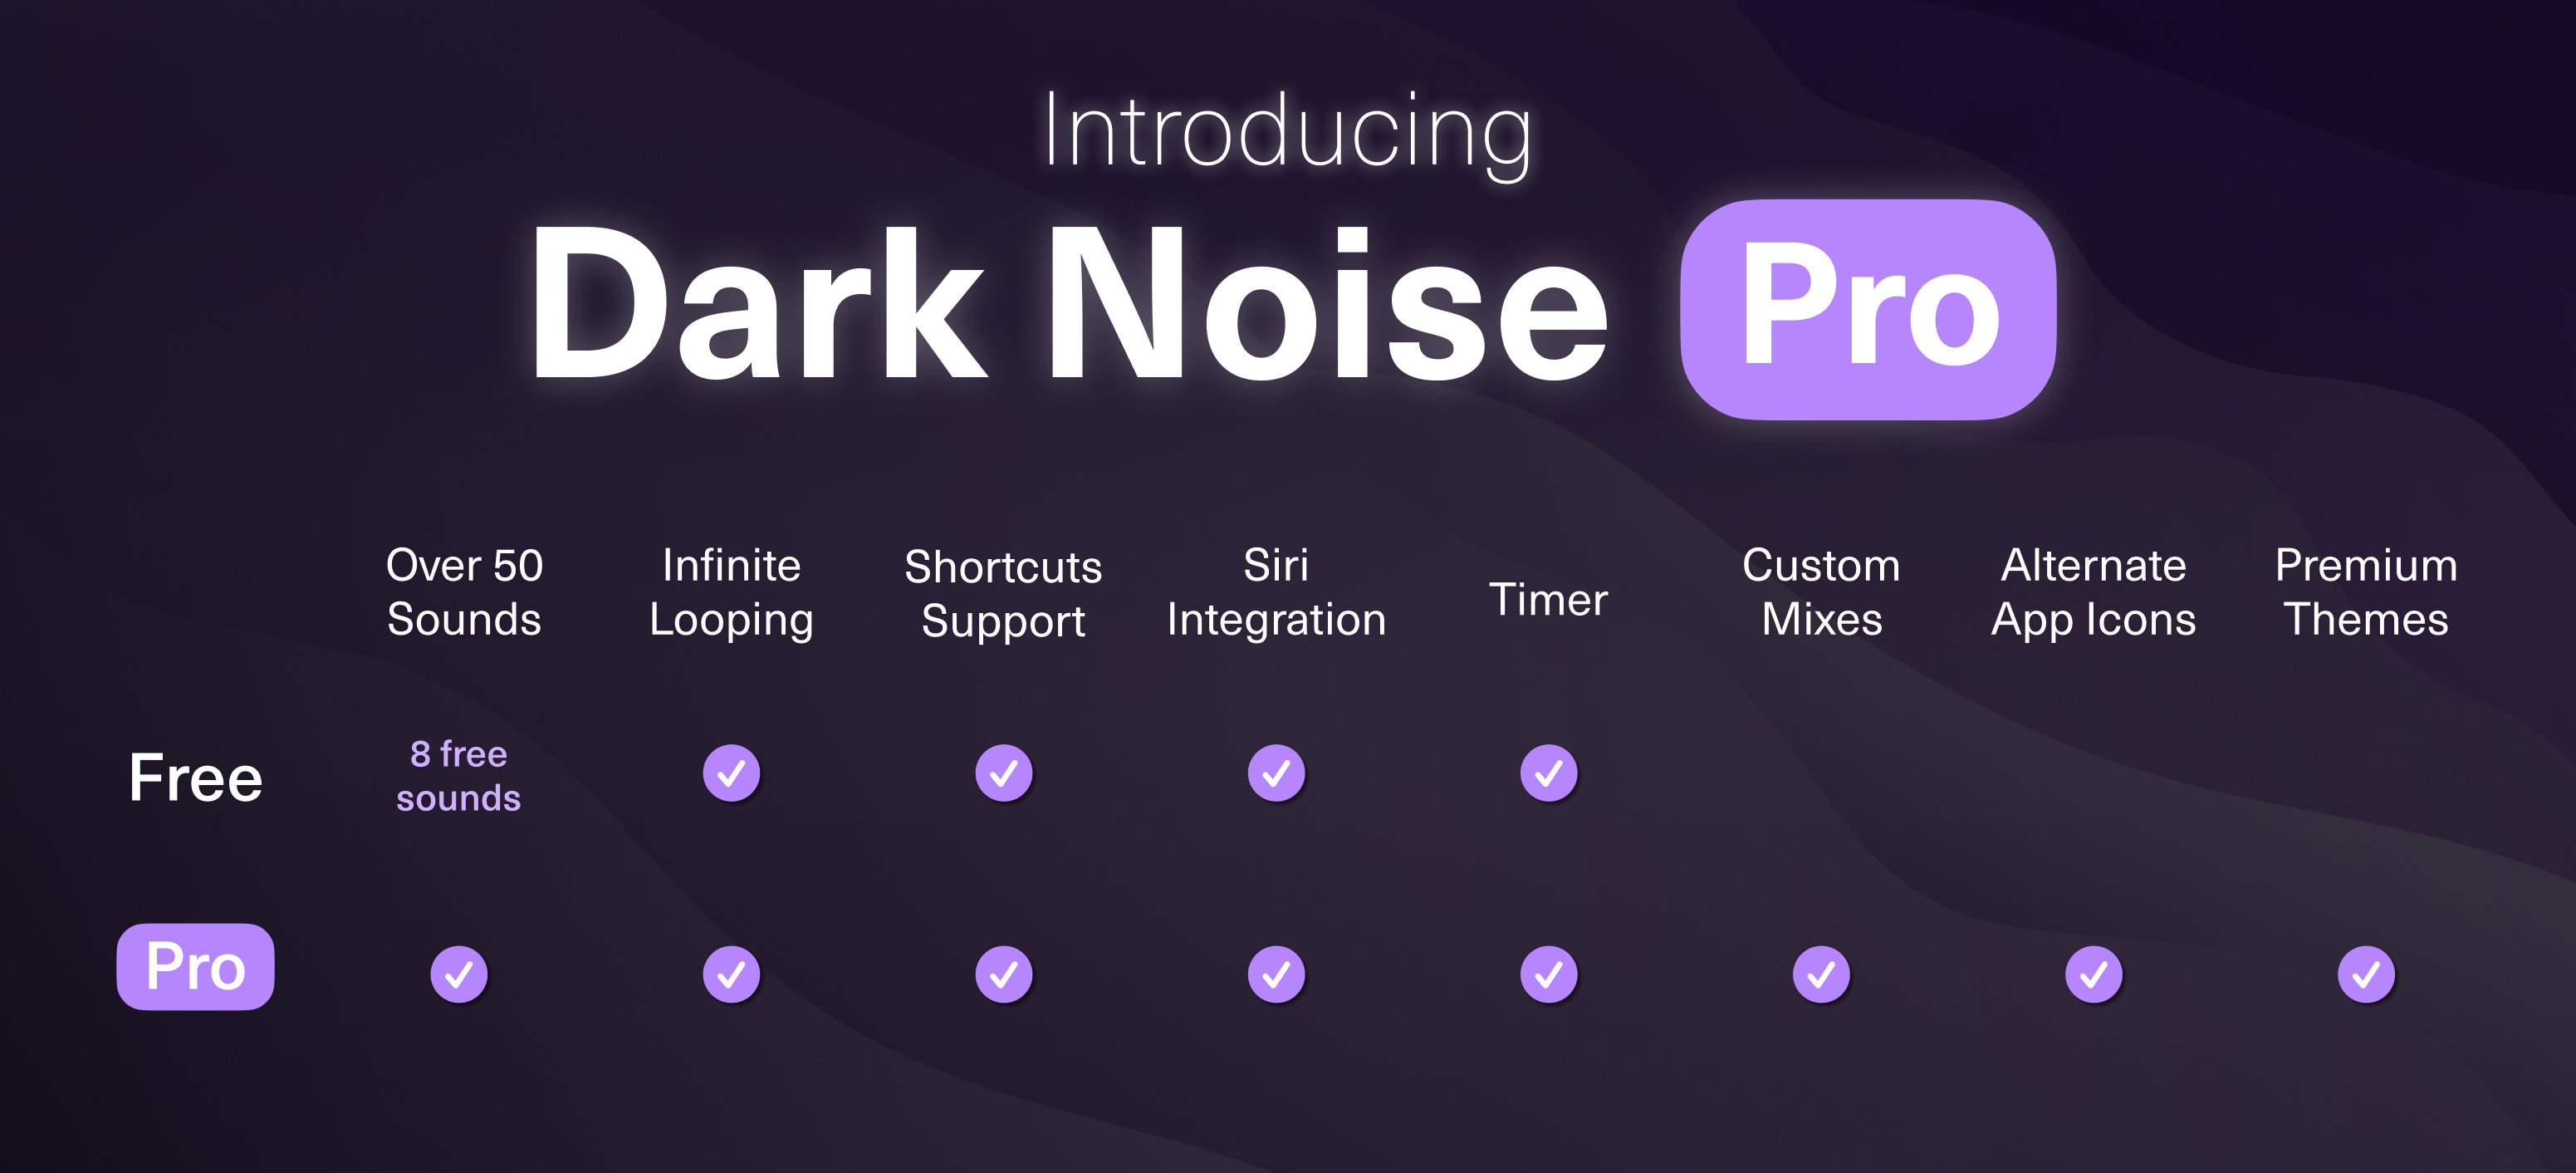 Dark Noise Tier Comparisons